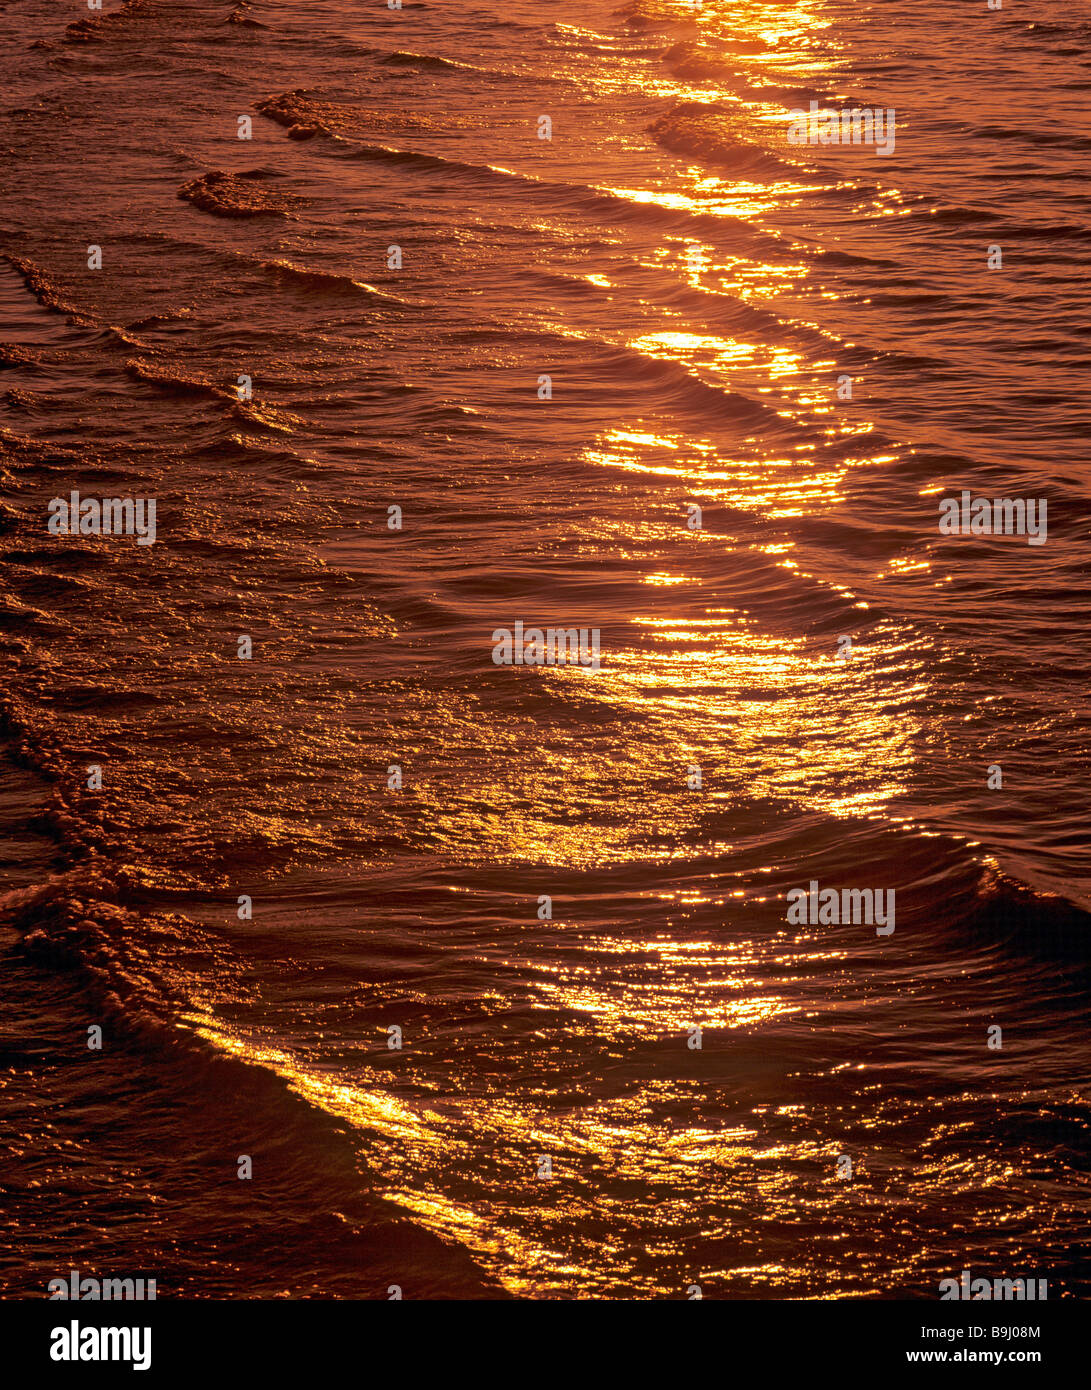 Luce dorata riflessa nell'acqua, tramonto Foto Stock